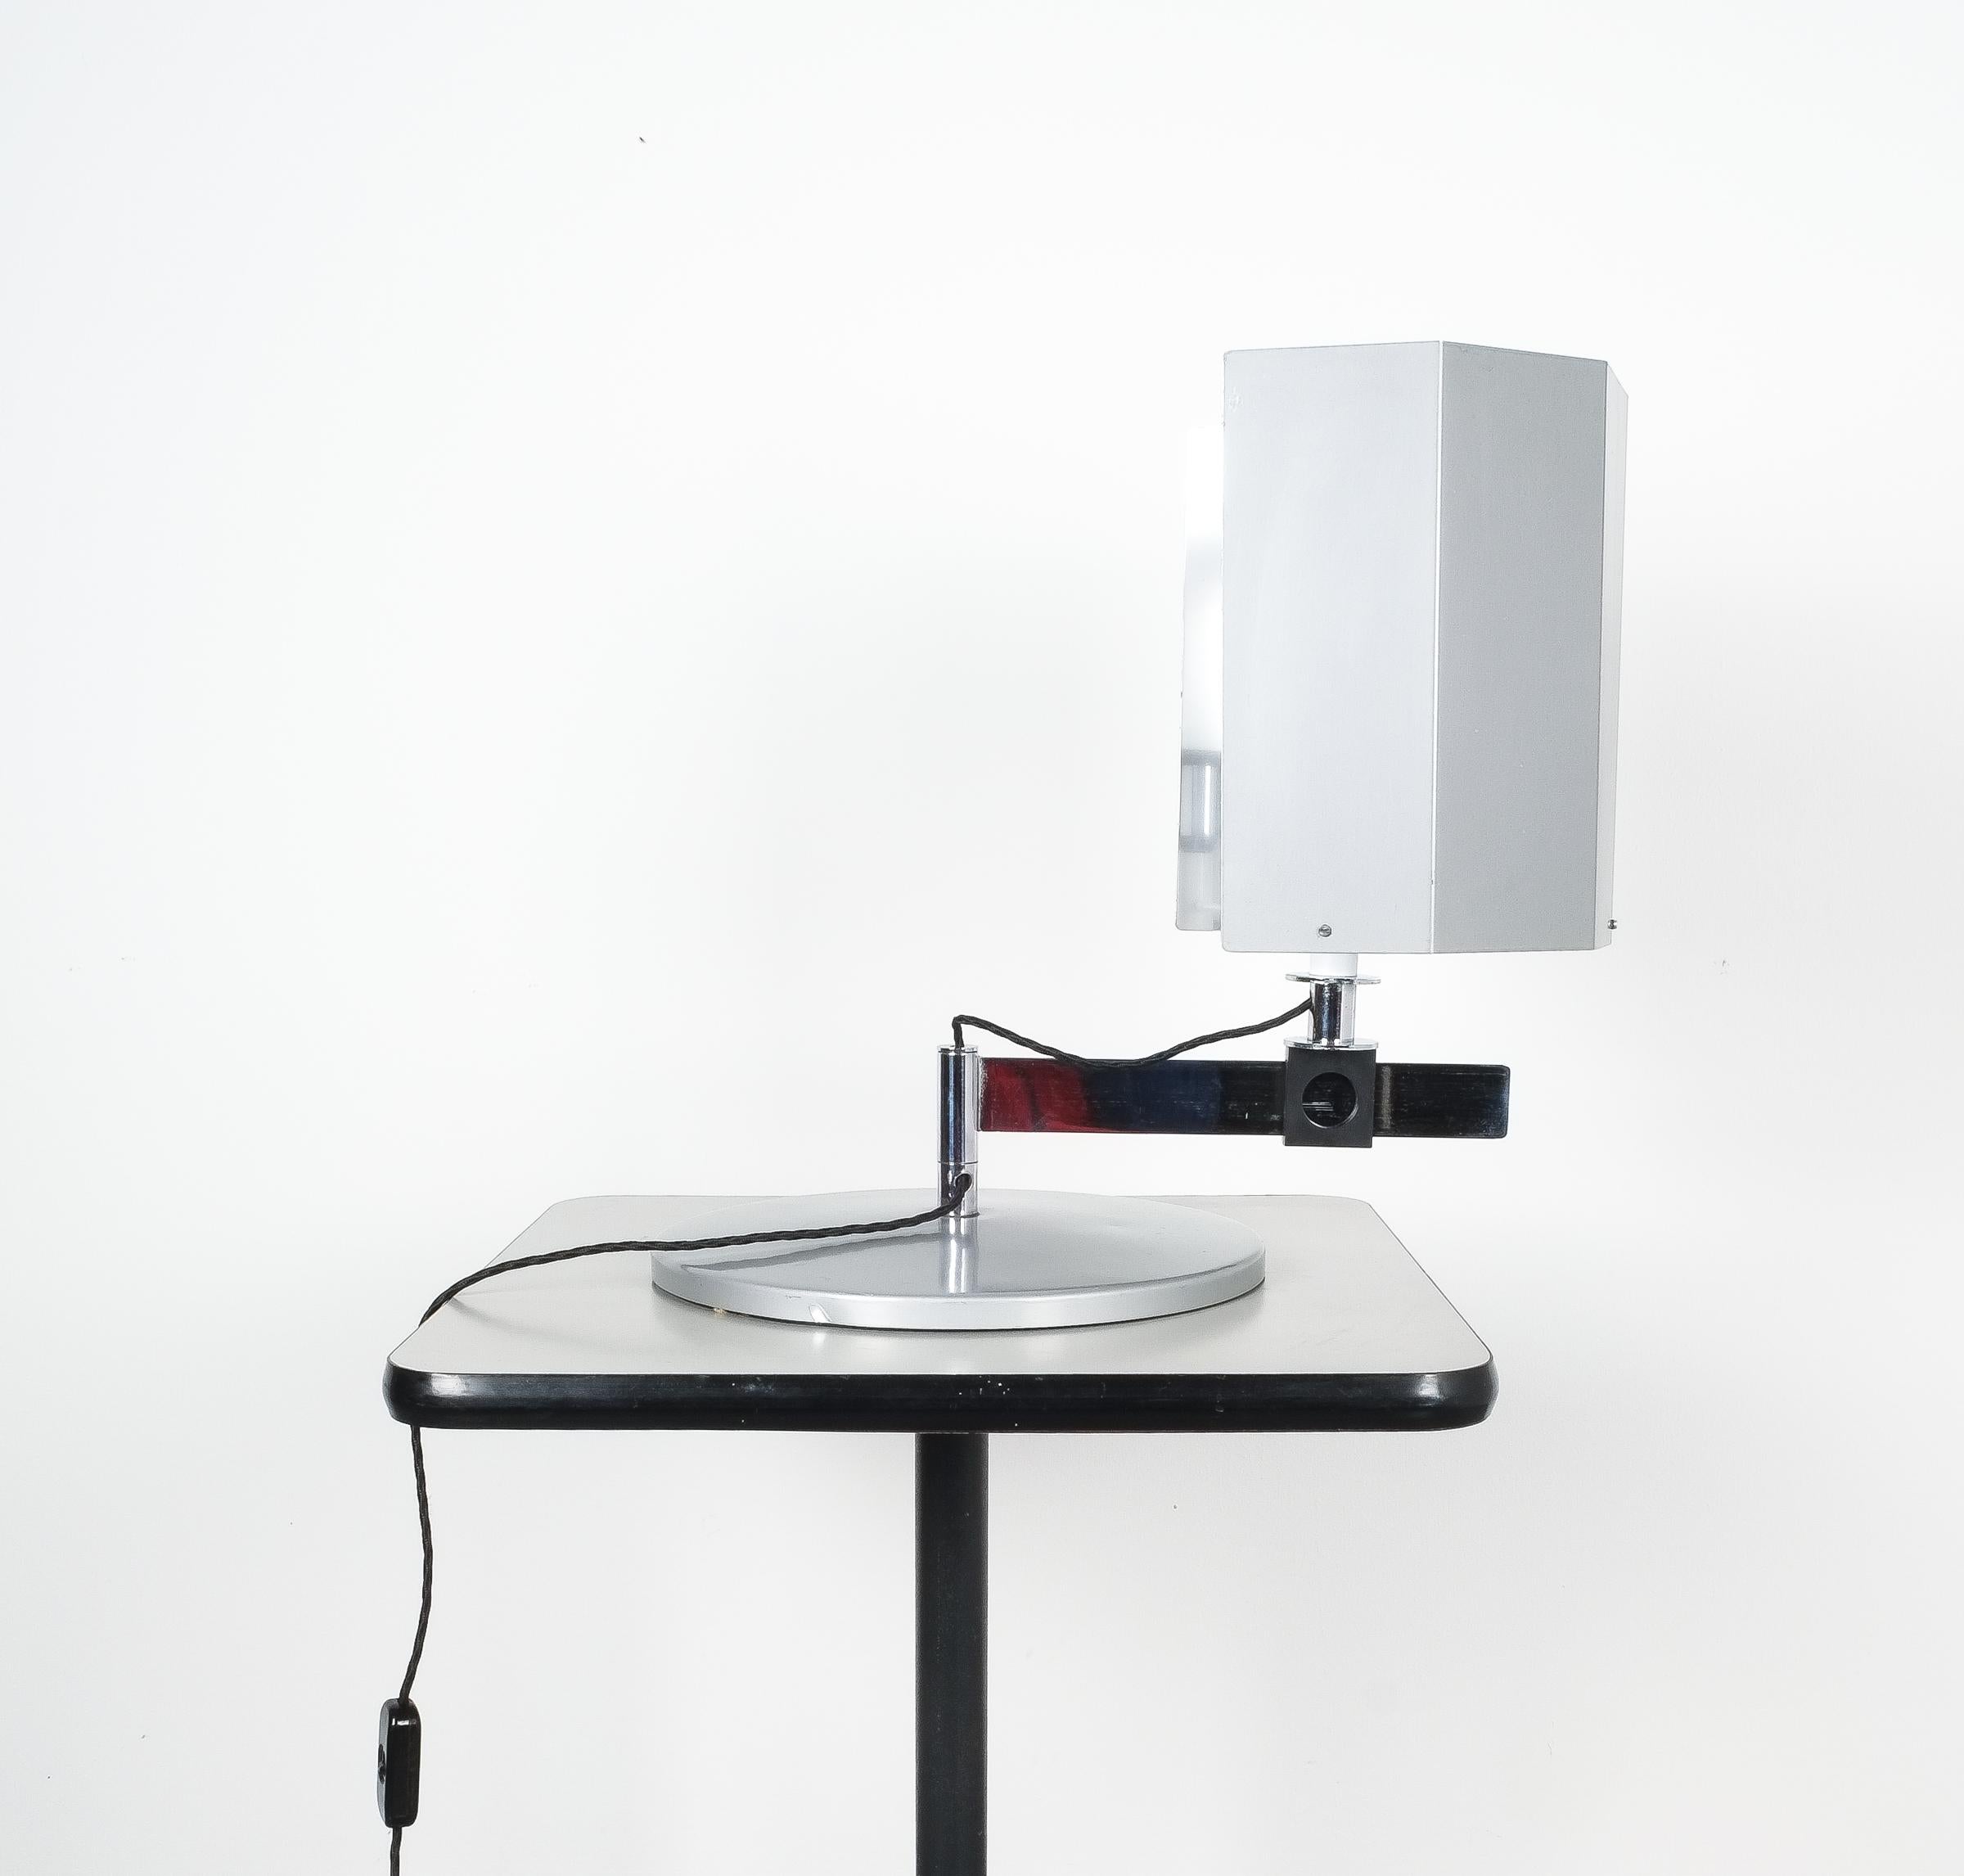 Lampe de bureau Bauhaus de Carl J. Jucker, Allemagne. 

Grande lampe de table conçue à l'origine en 1923 mais dérivant d'une production ultérieure probablement des années 1970 ou 1980. Cette lampe de bureau en métal peut être déplacée dans toutes